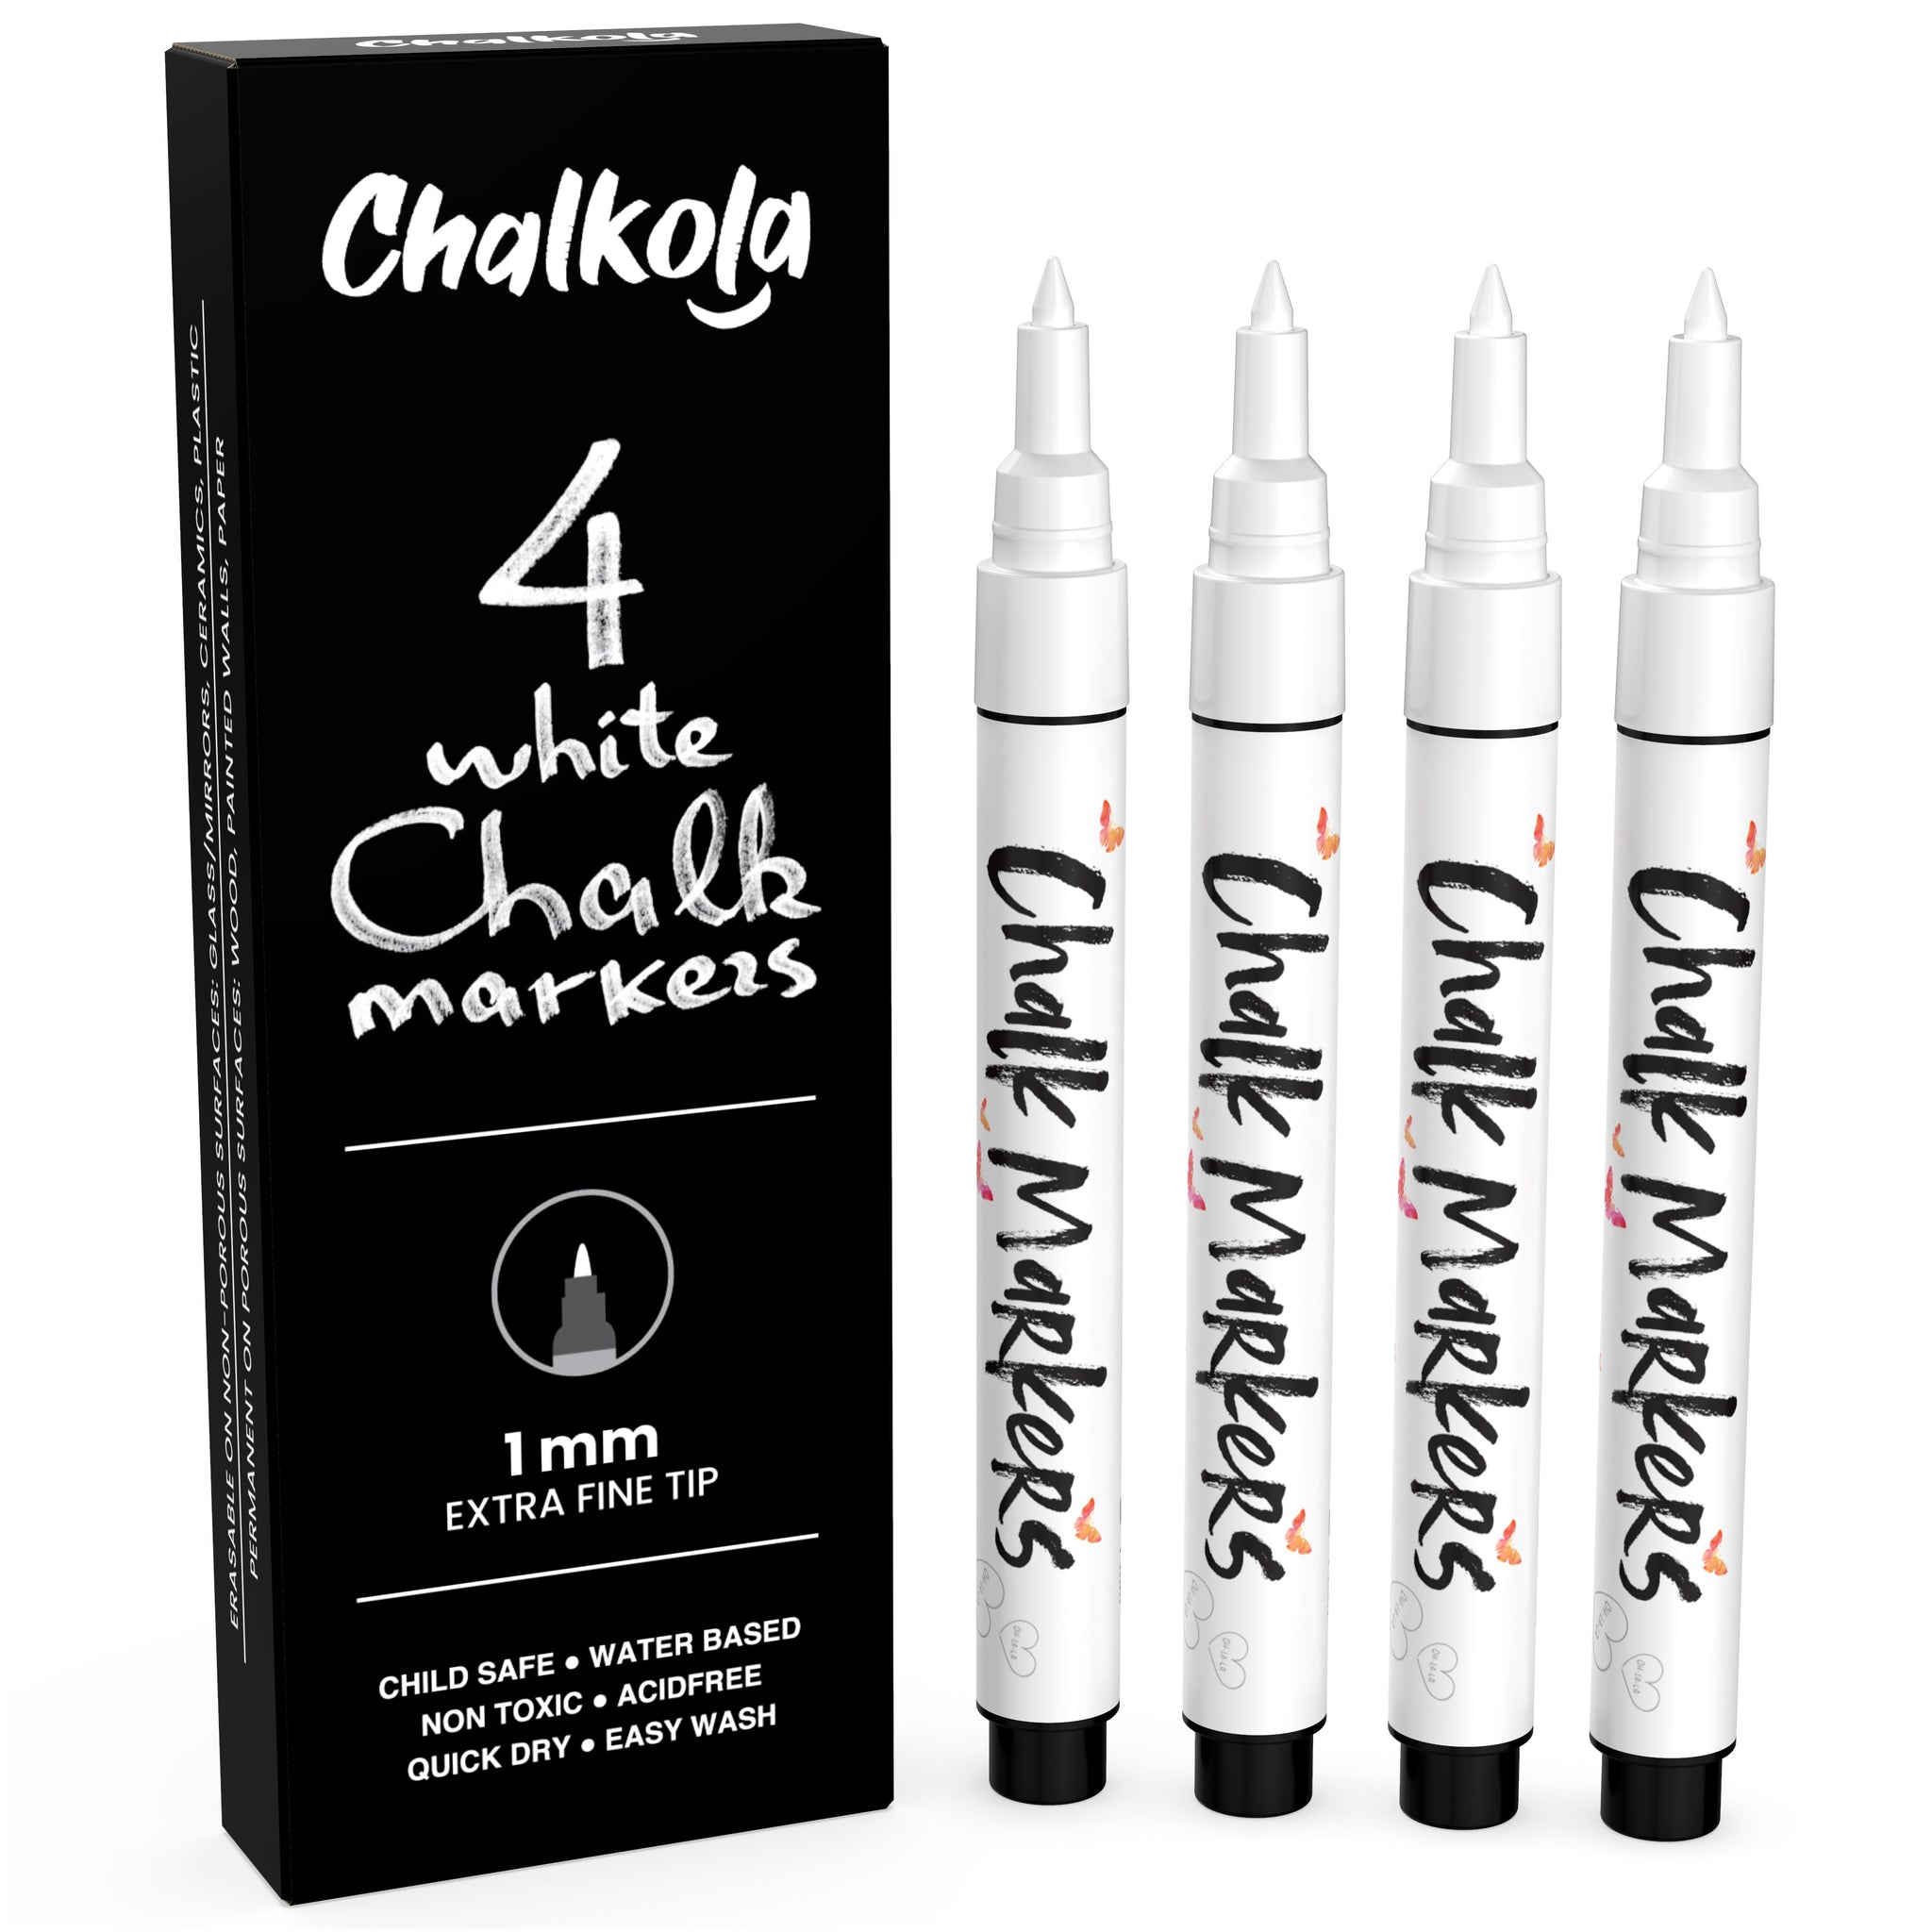 Chalkola Chalk Markers & Chalkboard